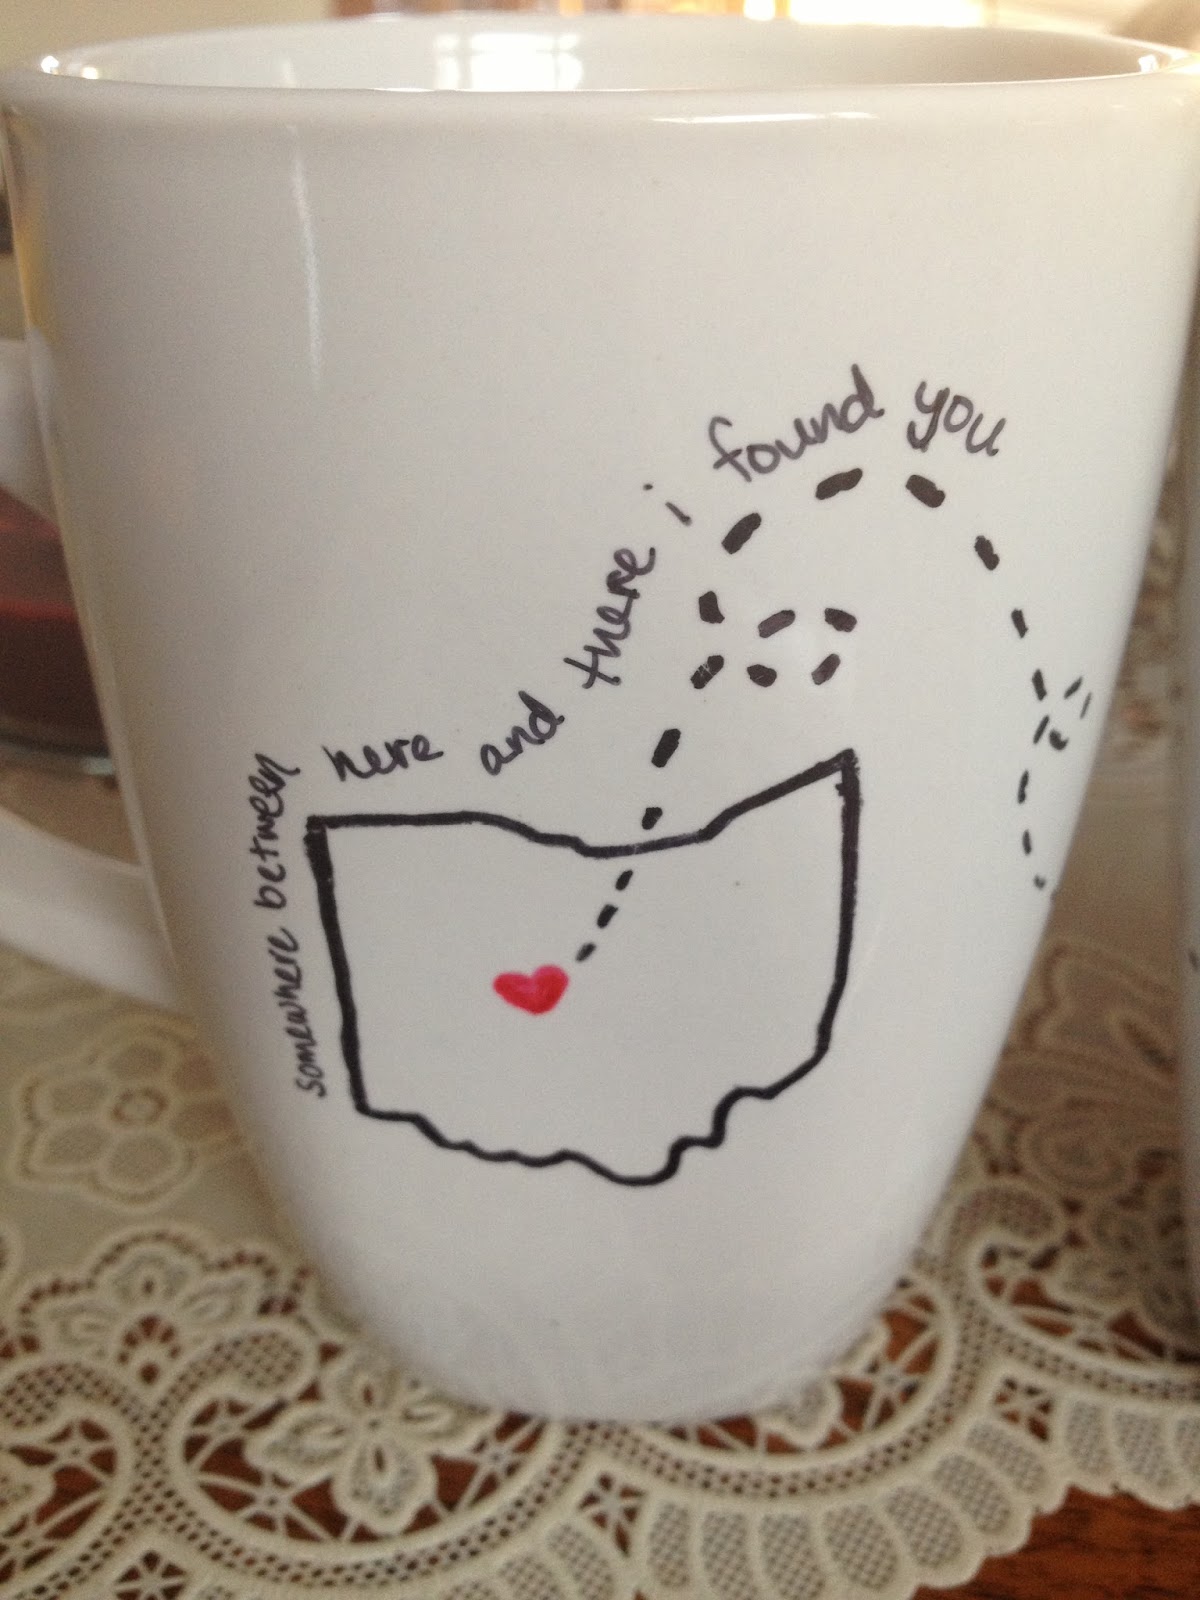 How to write on a mug